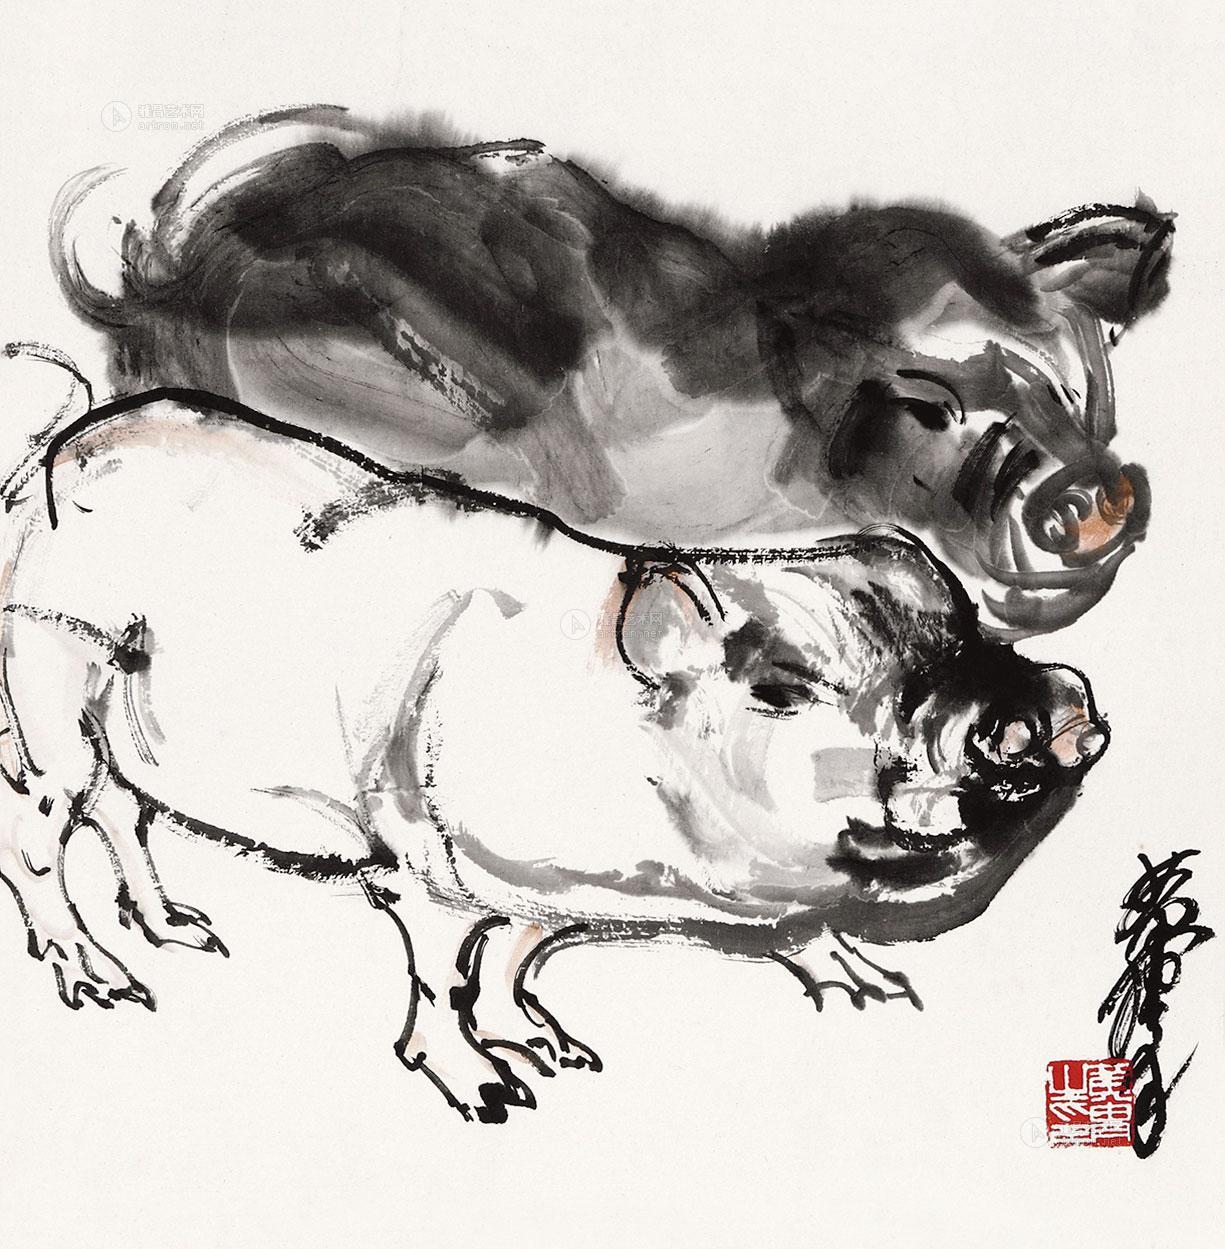 国画写意猪的画法图片